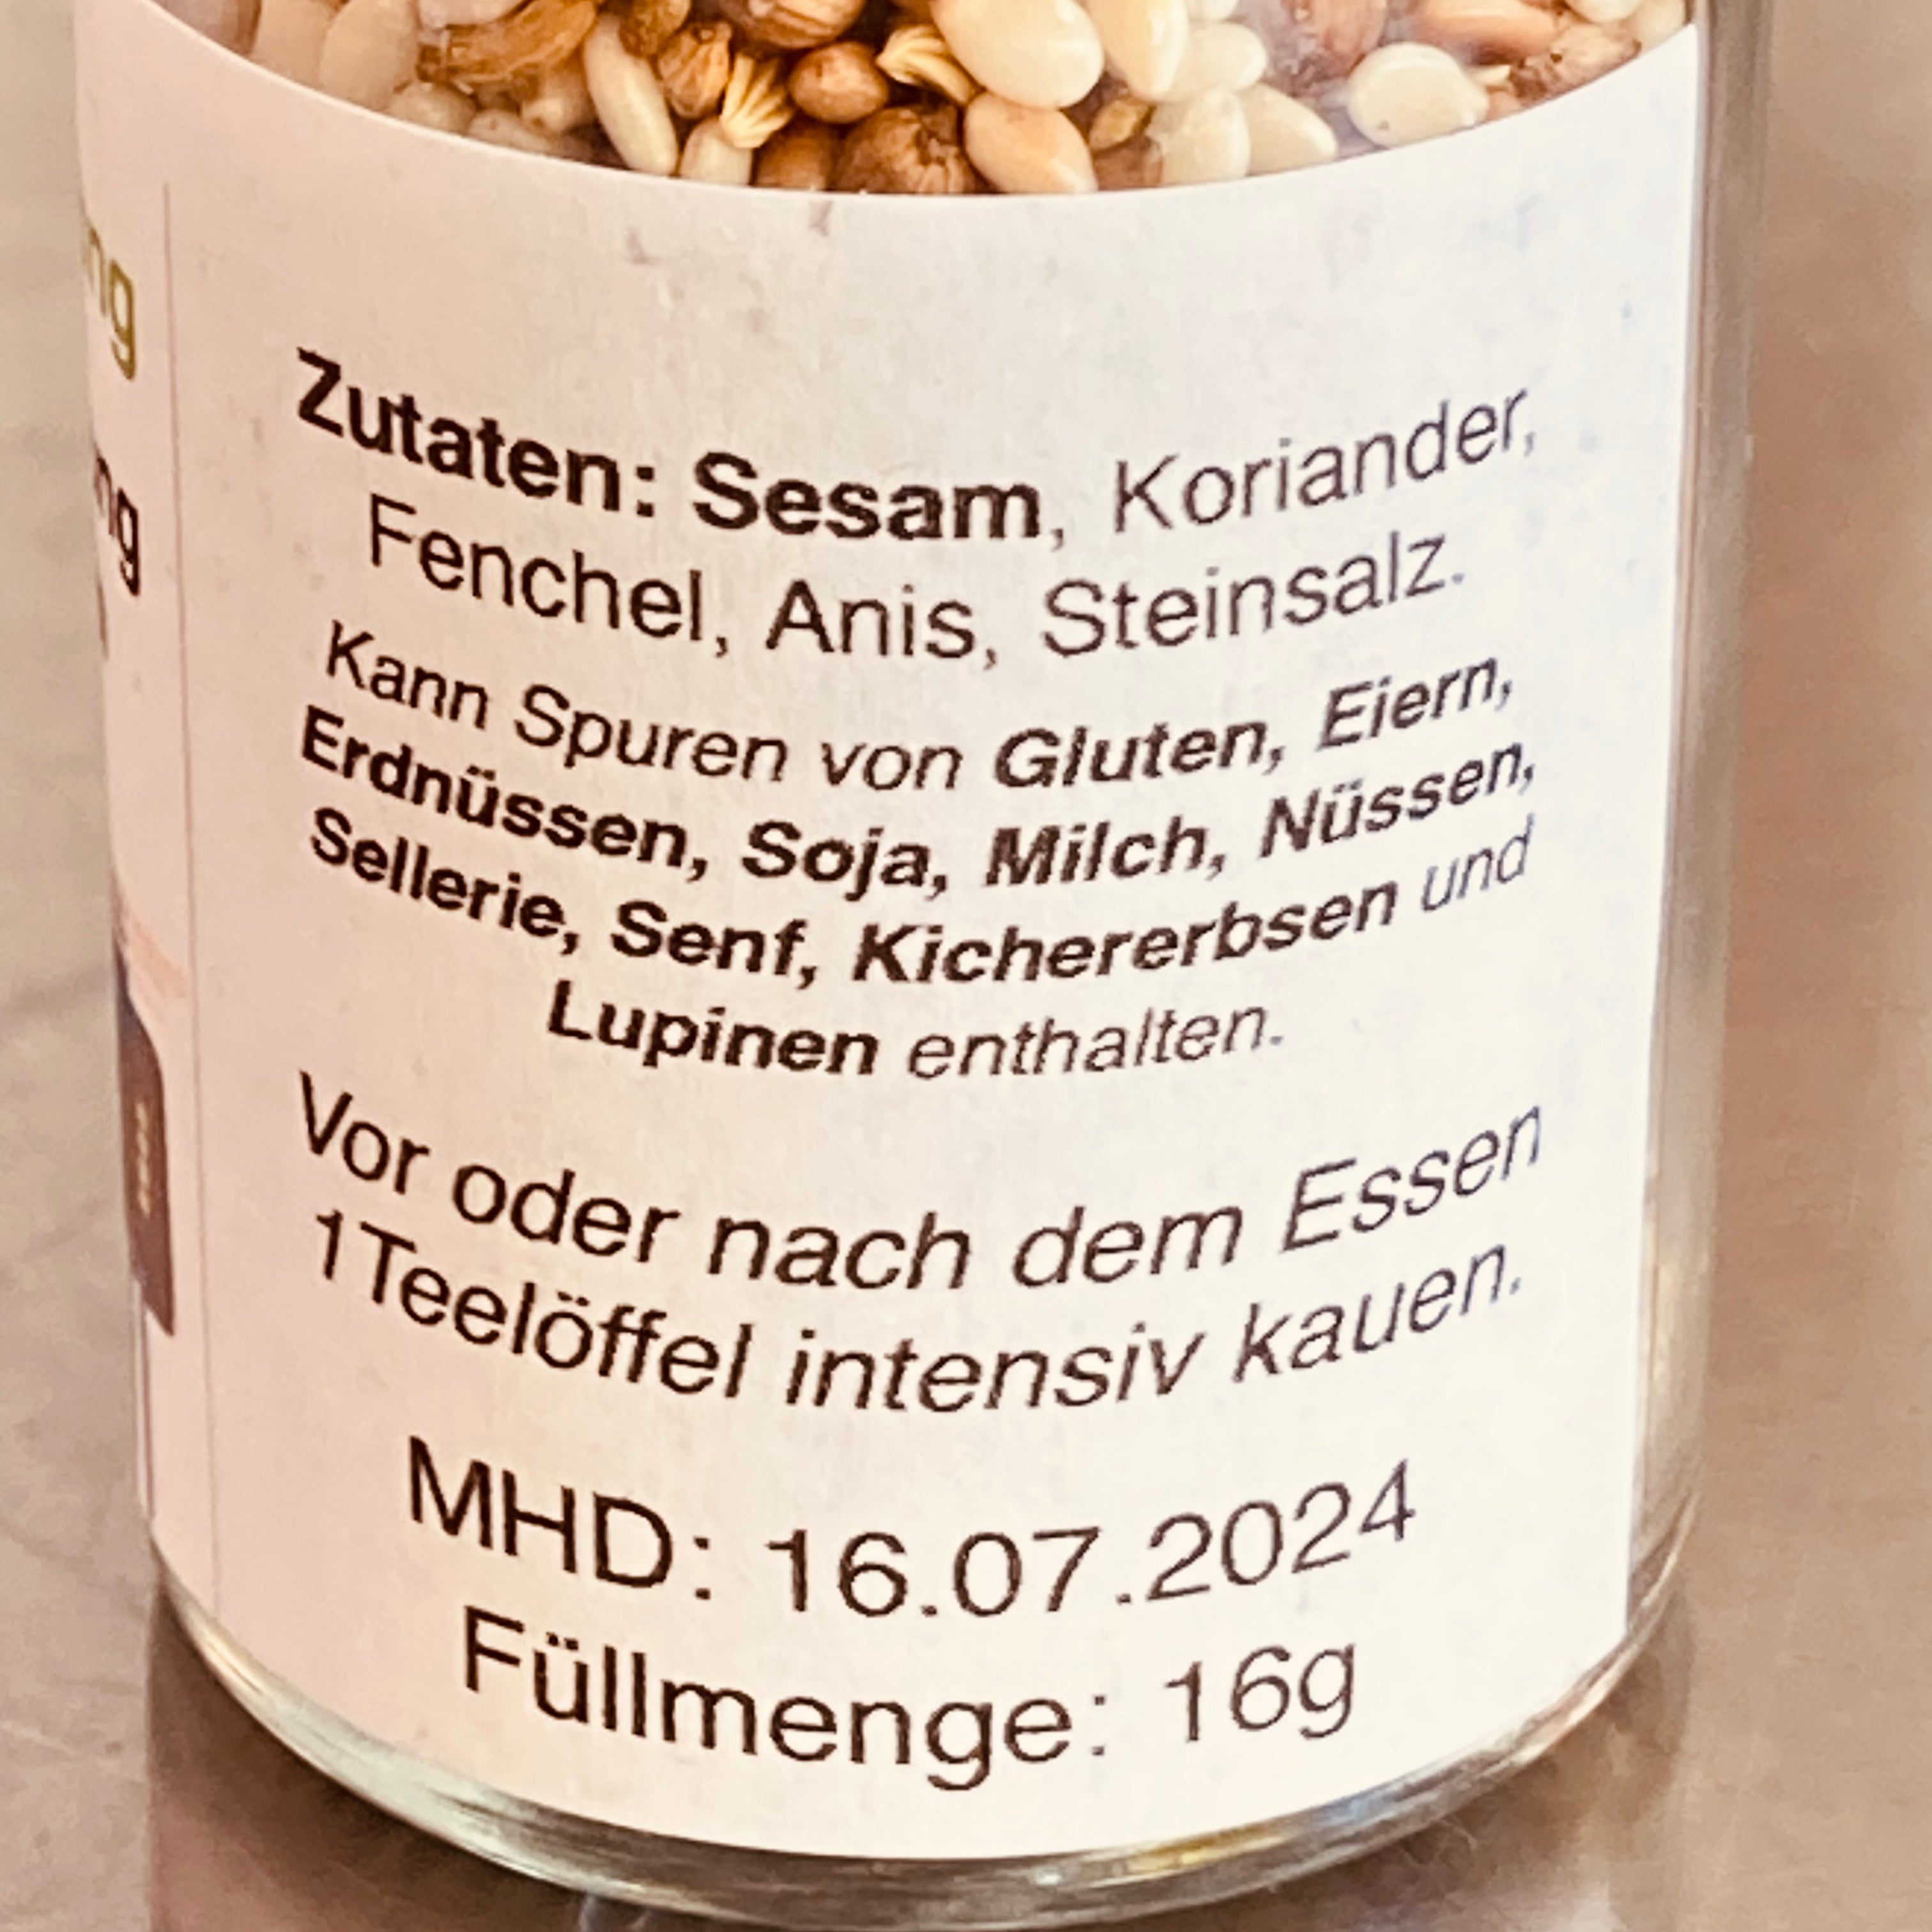 Nahaufnahme des Etiketts eines Qio Food-Glases mit einer Zutatenliste auf Deutsch, beispielsweise Sesam, Koriander und verschiedene Allergene, wobei das Mindesthaltbarkeitsdatum 16.07.2024 sichtbar ist.